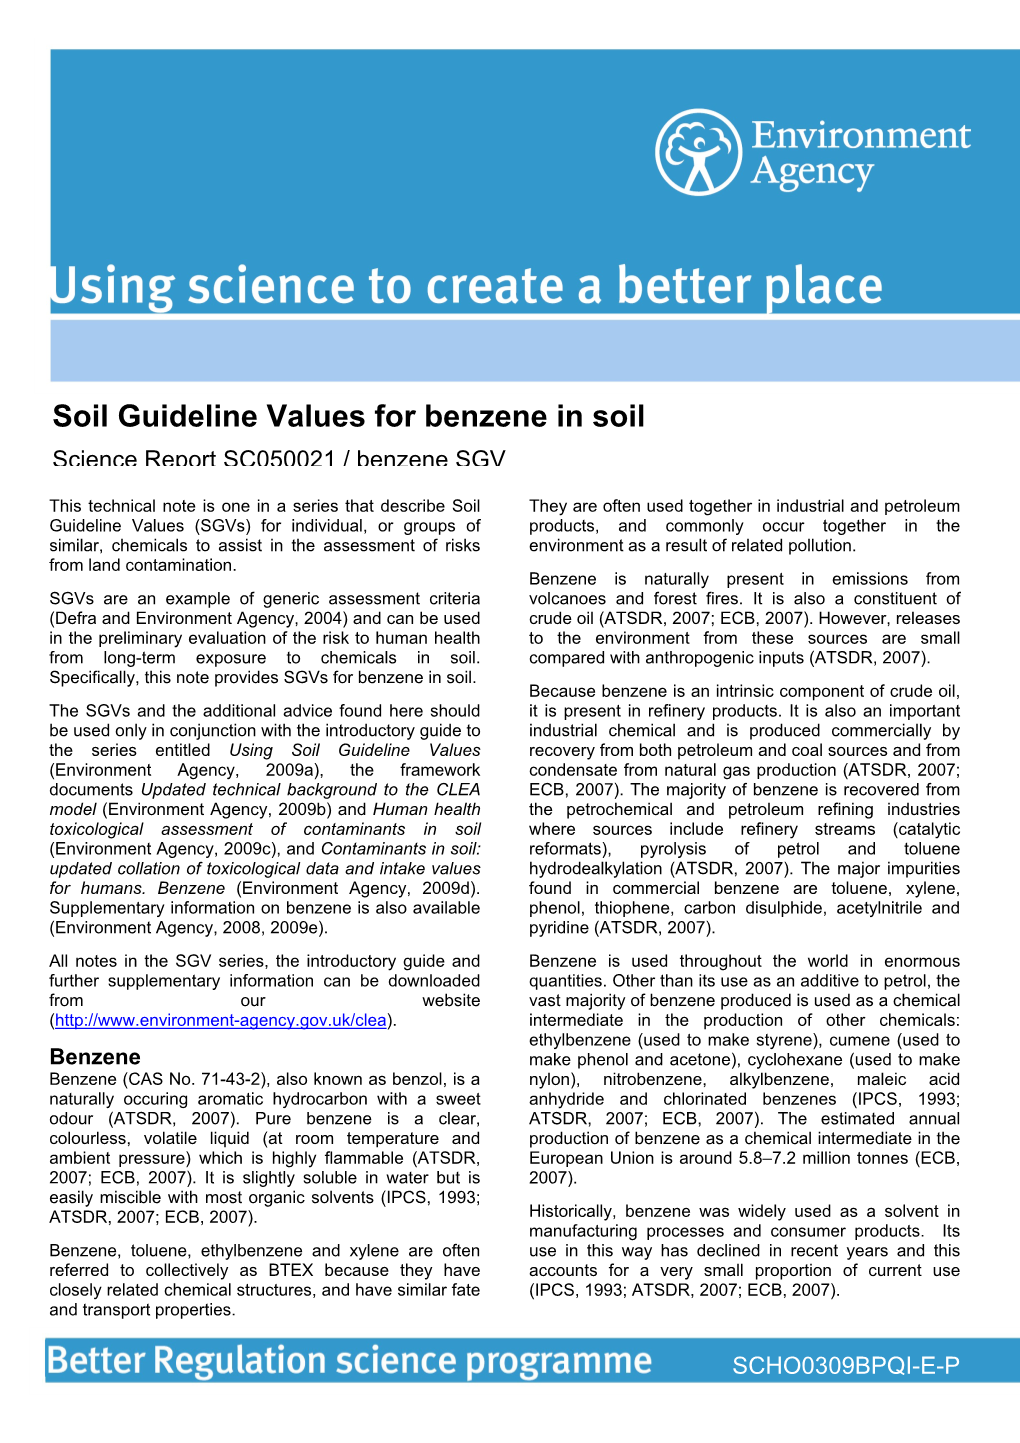 Soil Guideline Values for Benzene in Soil